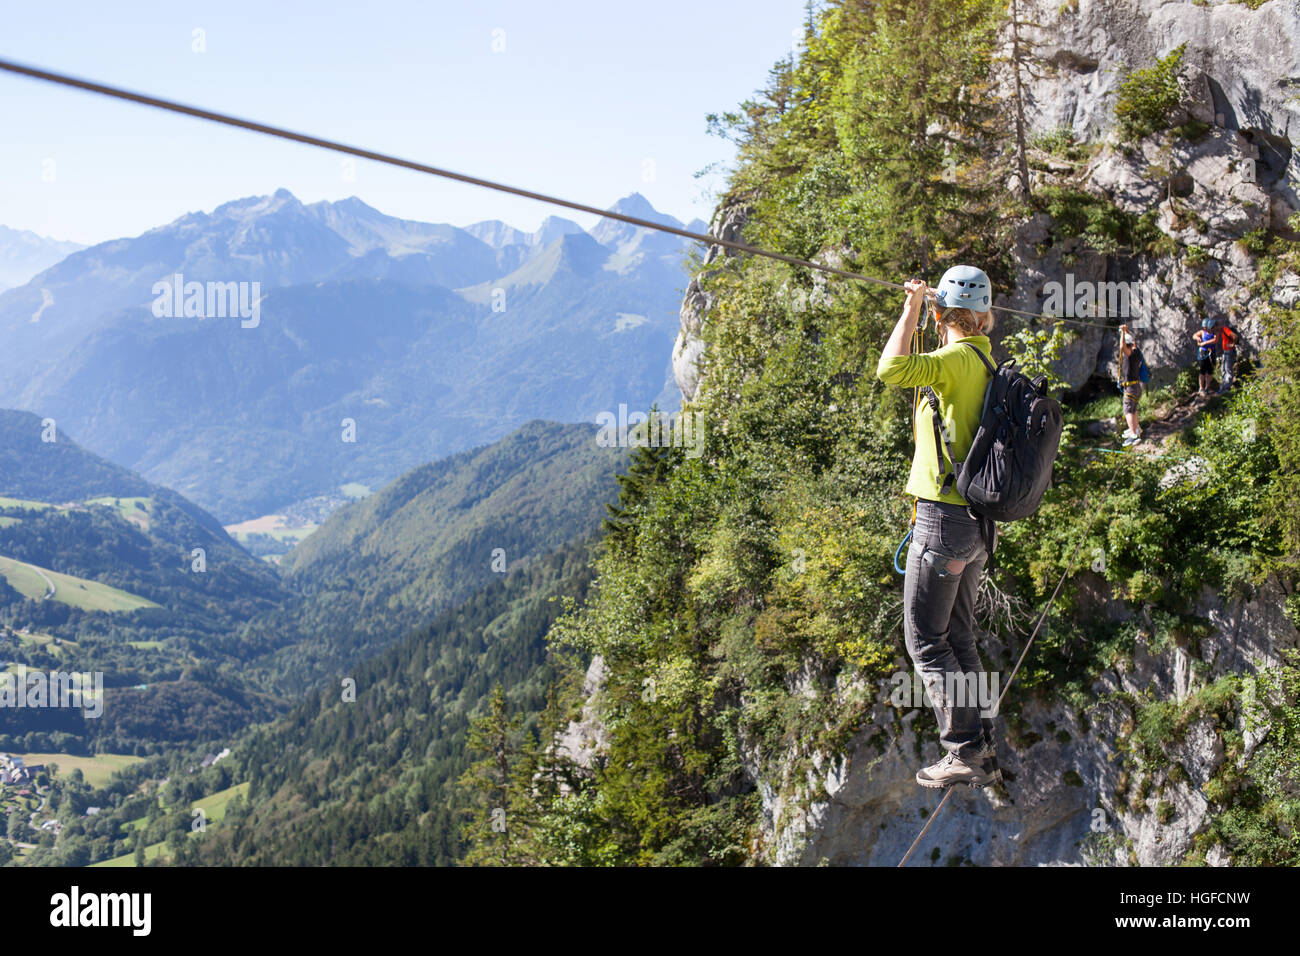 Klettersteig, Klettern Frau im Kabelbaum Kreuzung Seil Brücke in den Bergen, Alpinismus oder Extremsport Stockfoto